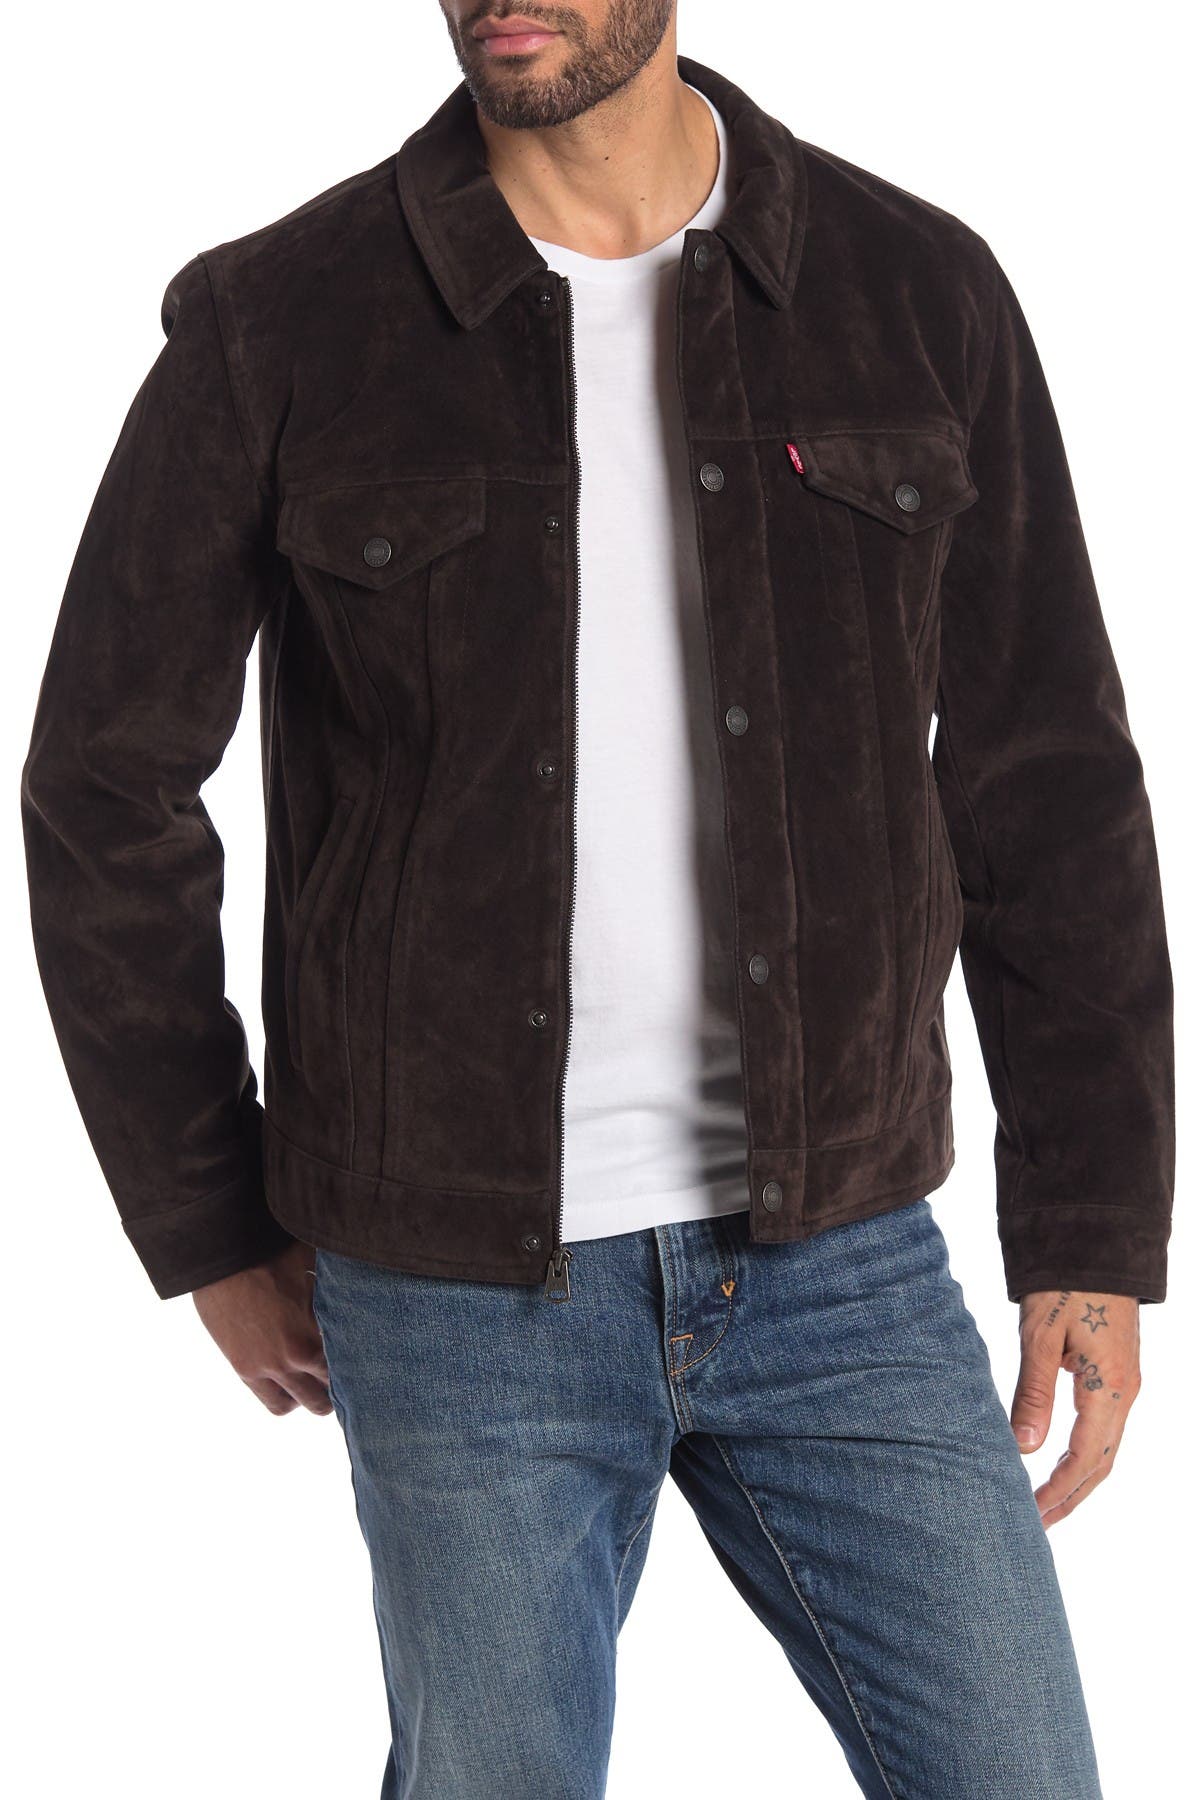 levi's faux suede trucker jacket